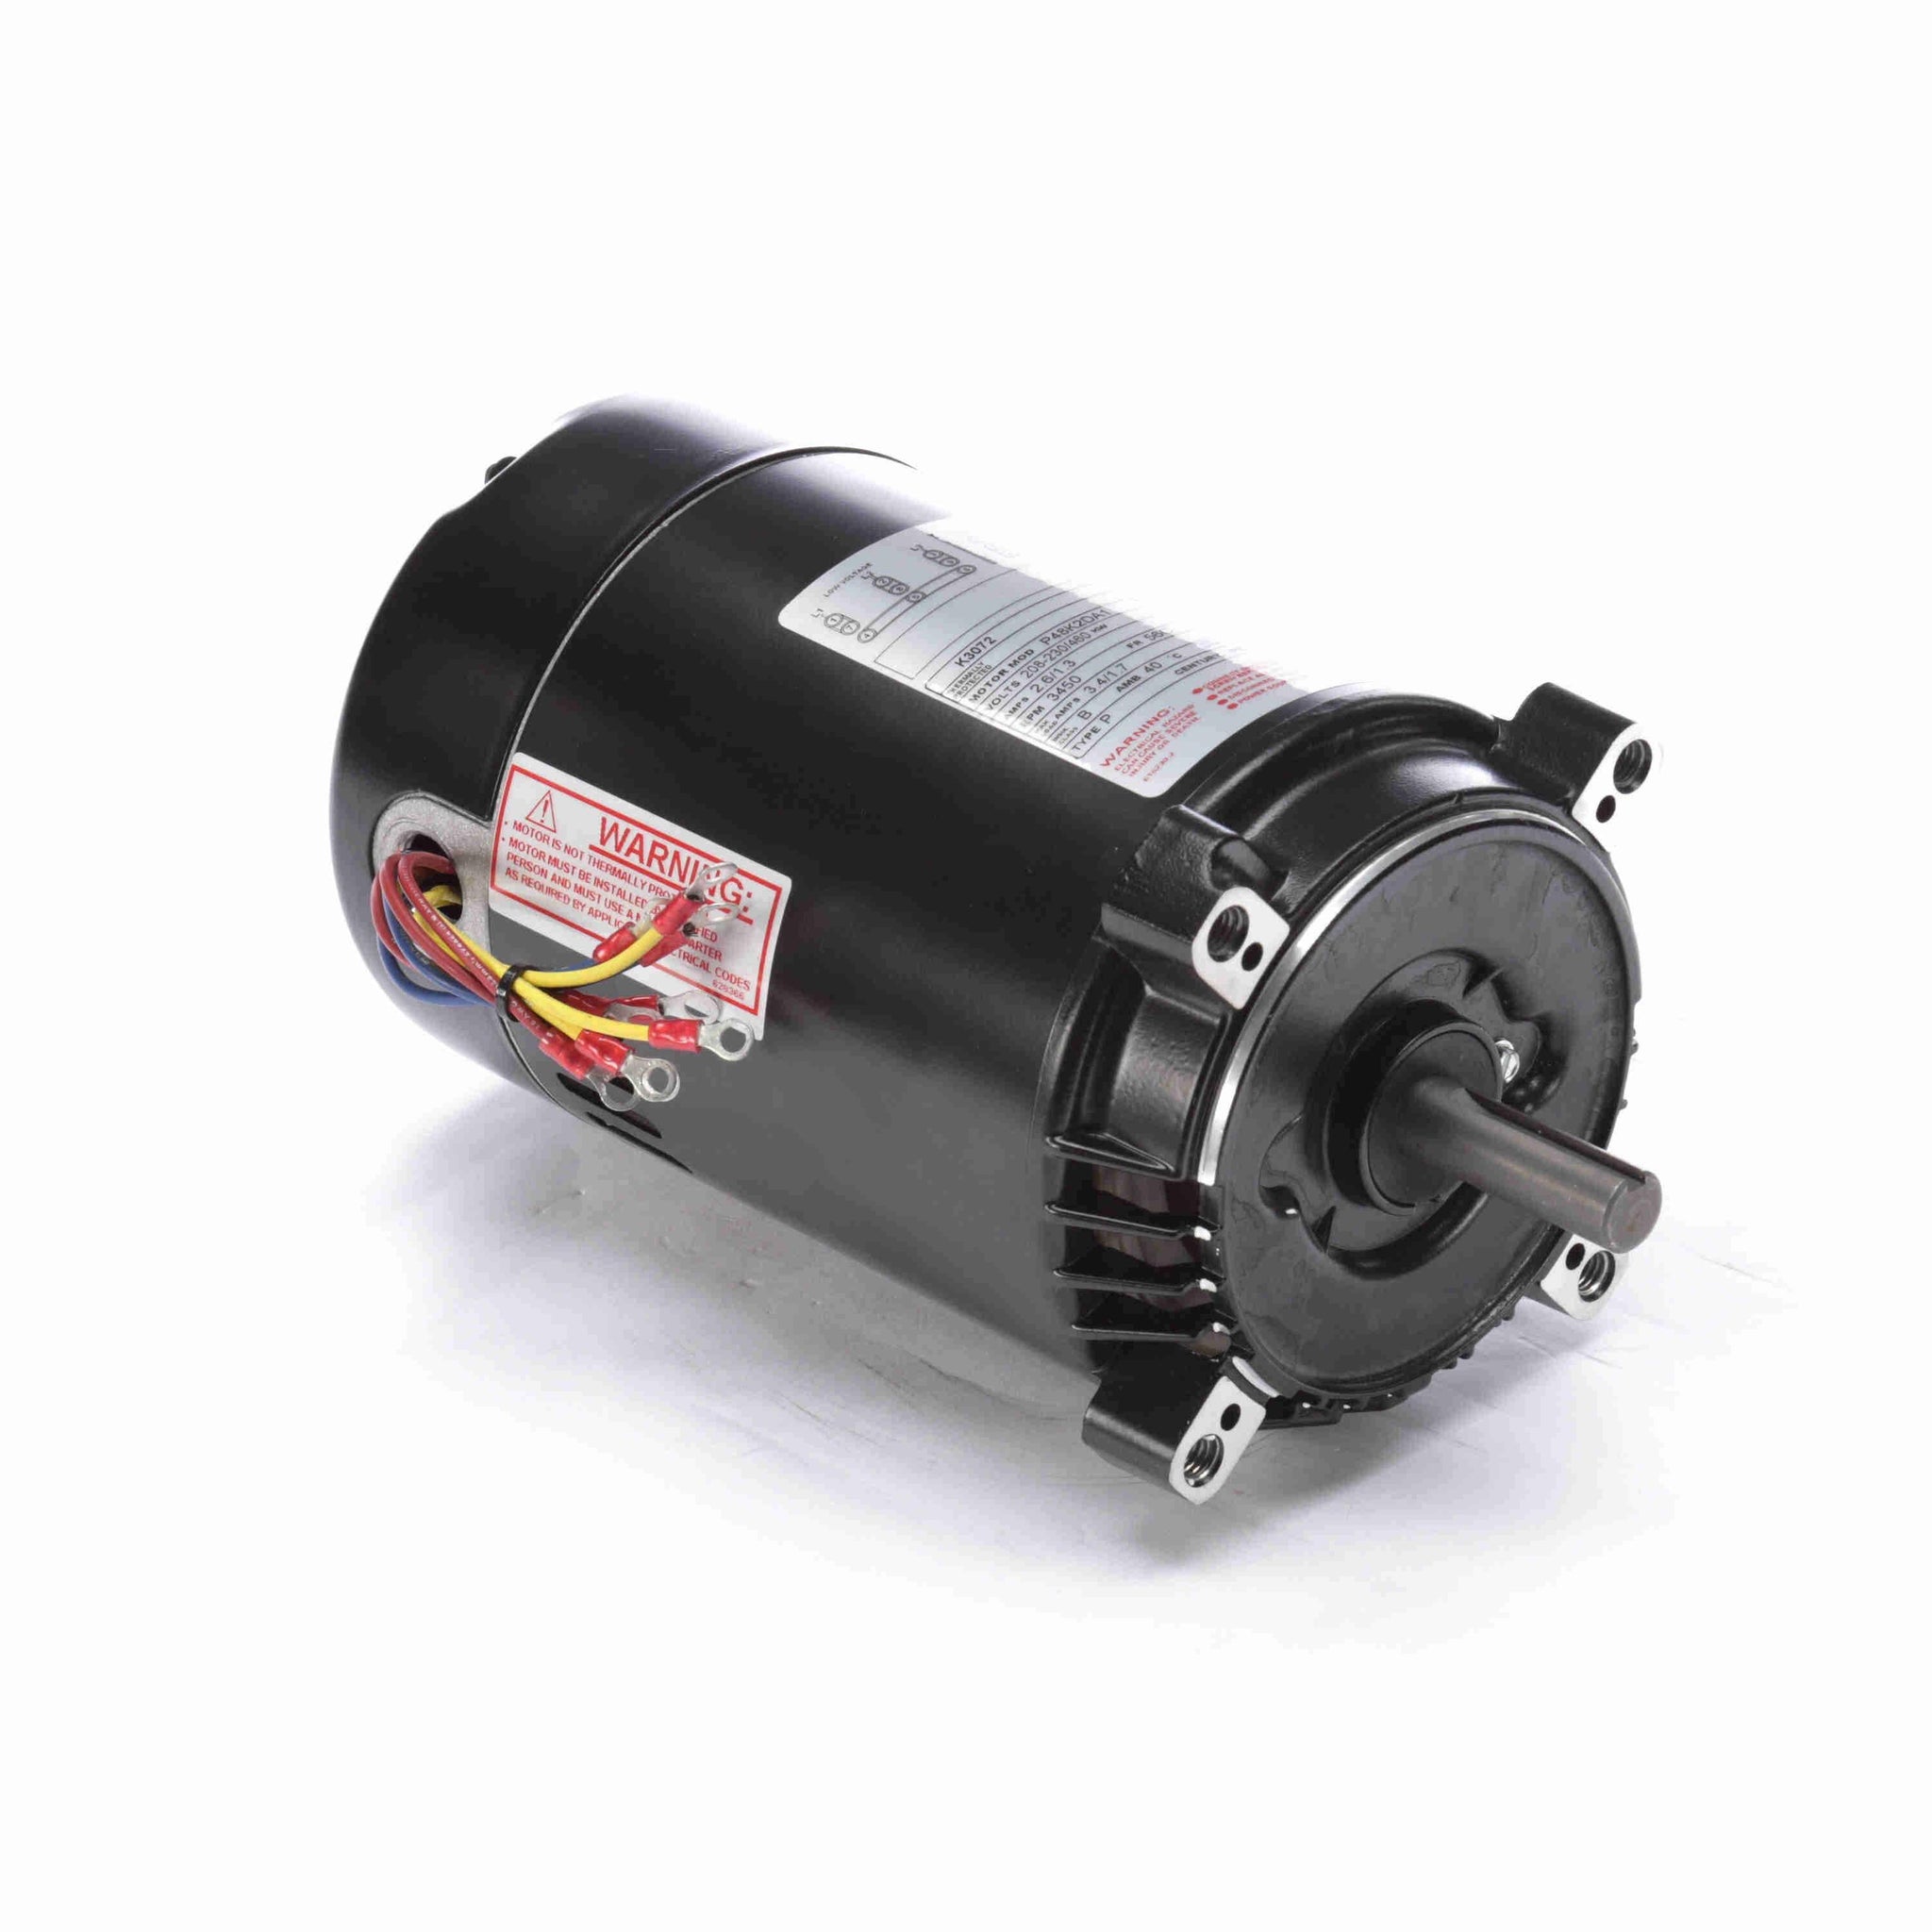 K3072 - 3/4 HP Pool Pump Motor, 3 phase, 3600 RPM, 208-230/460 V, 56C Frame, ODP - Hardware & Moreee